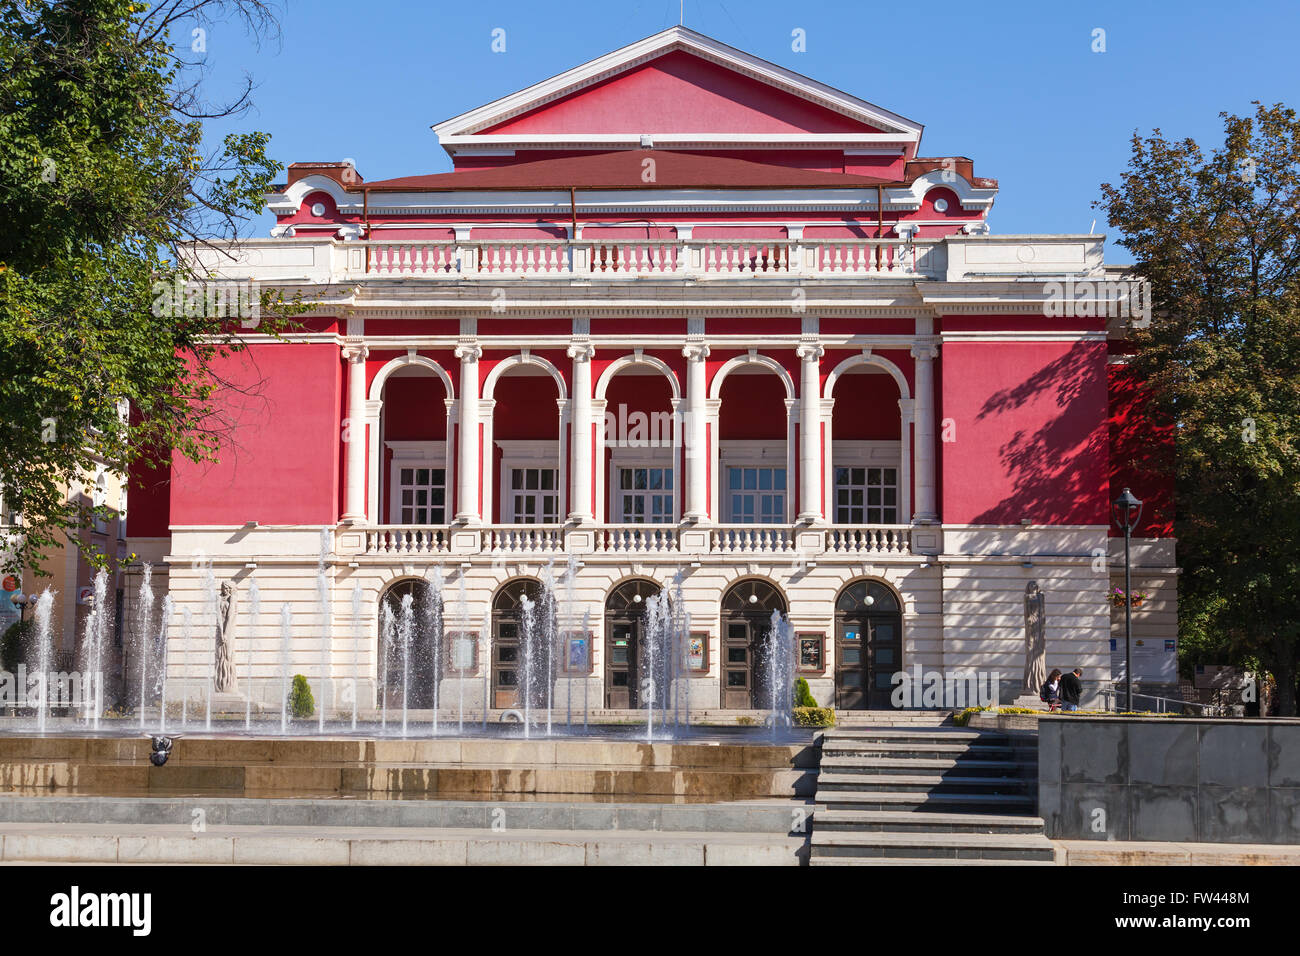 Ruse, Bulgarie - 29 septembre 2014 : Façade de l'Opéra nationale bulgare en Ruse Banque D'Images